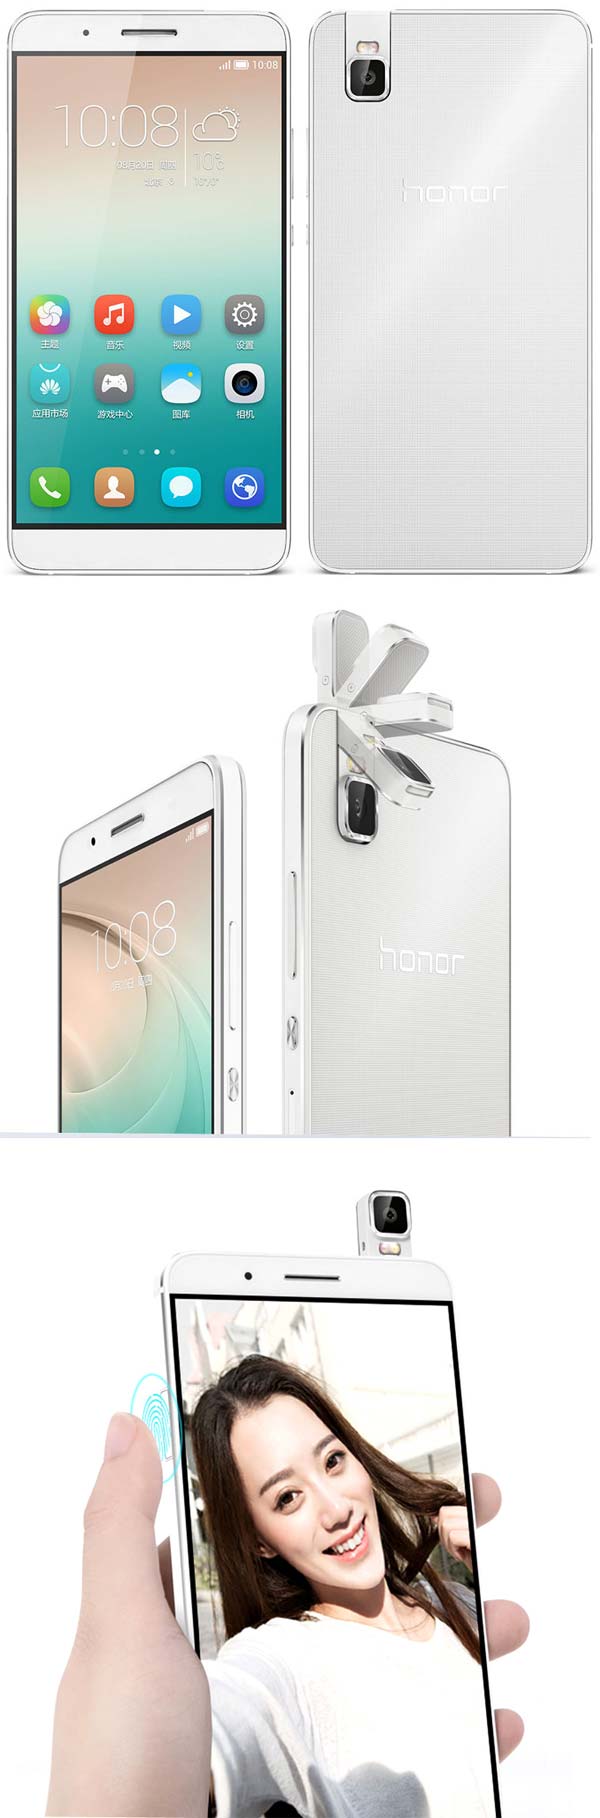 На фото можно увидеть аппарат Huawei Honor 7i